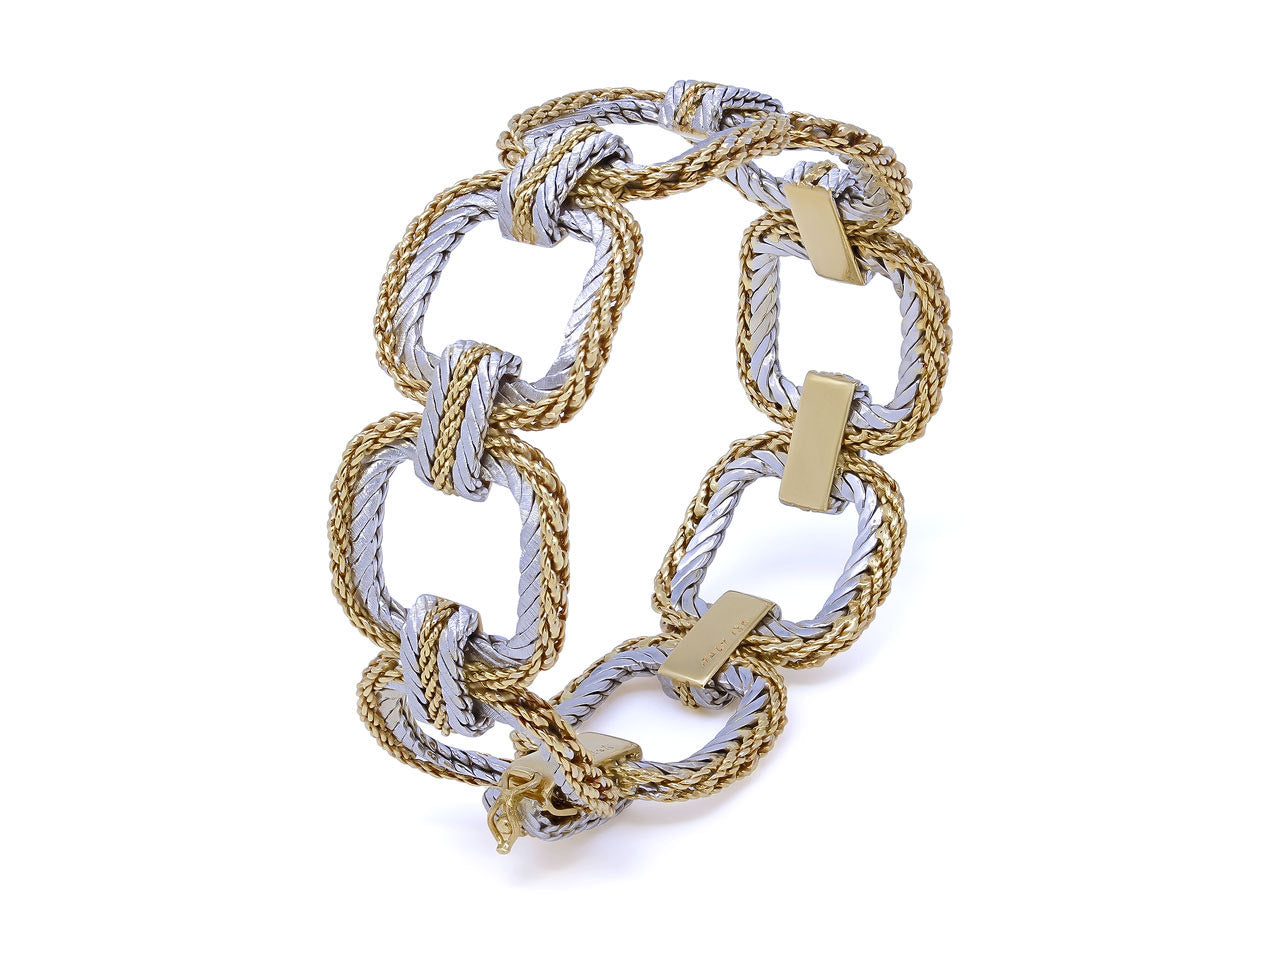 Buccellati Two-Tone Link Bracelet in 18K Gold